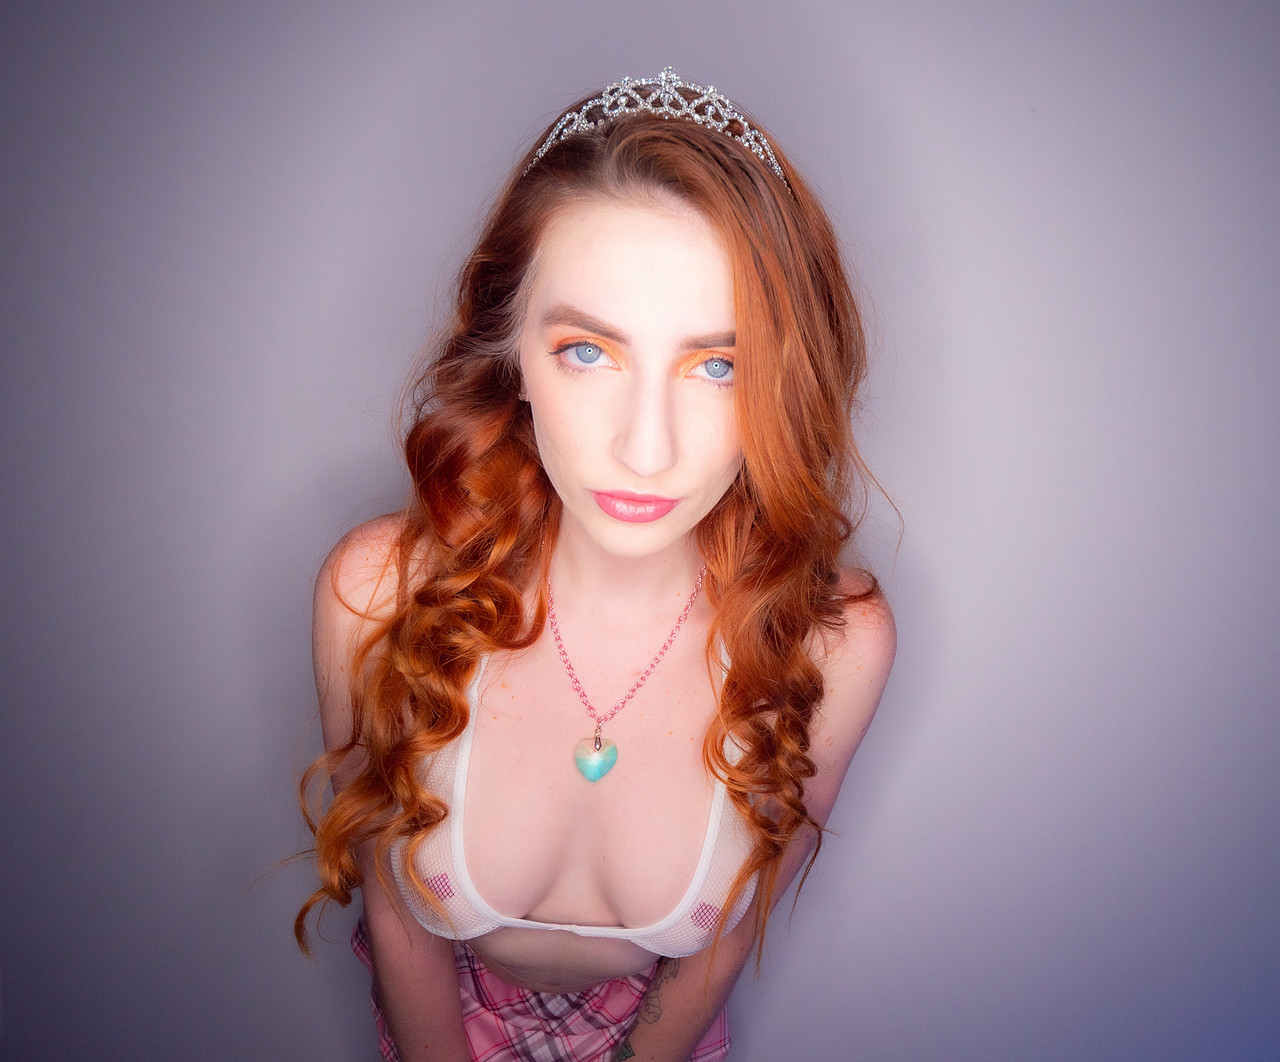 Redheaded princess Aria Carson engages in POV sex while wearing hosiery porno fotoğrafı #425288792 | Mr Lucky POV Pics, Aria Carson, POV, mobil porno